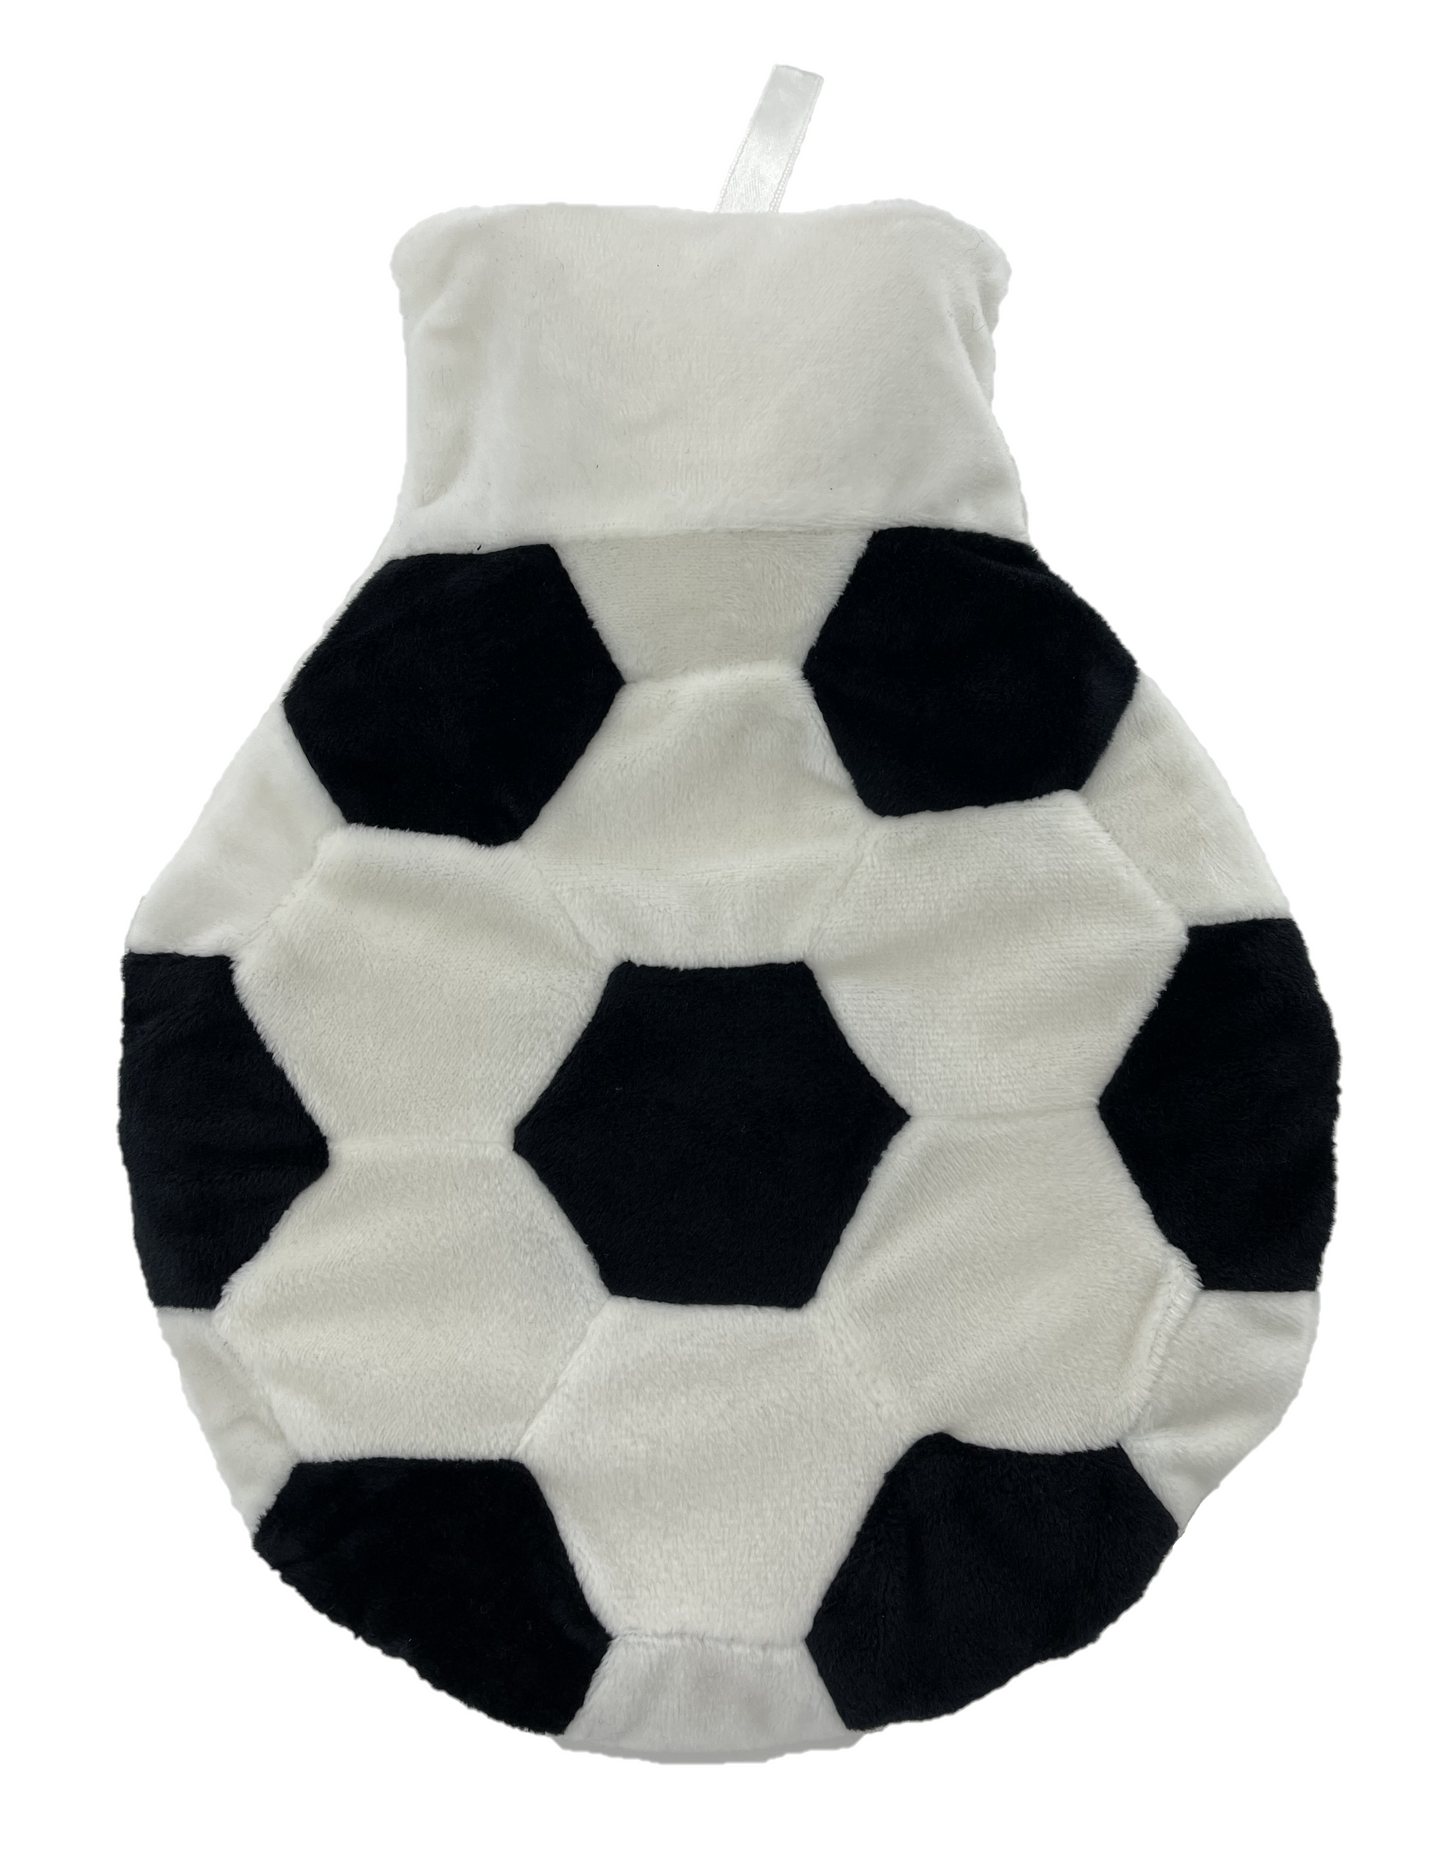 Football Design 1Lt Hot Water Bottle & Cover